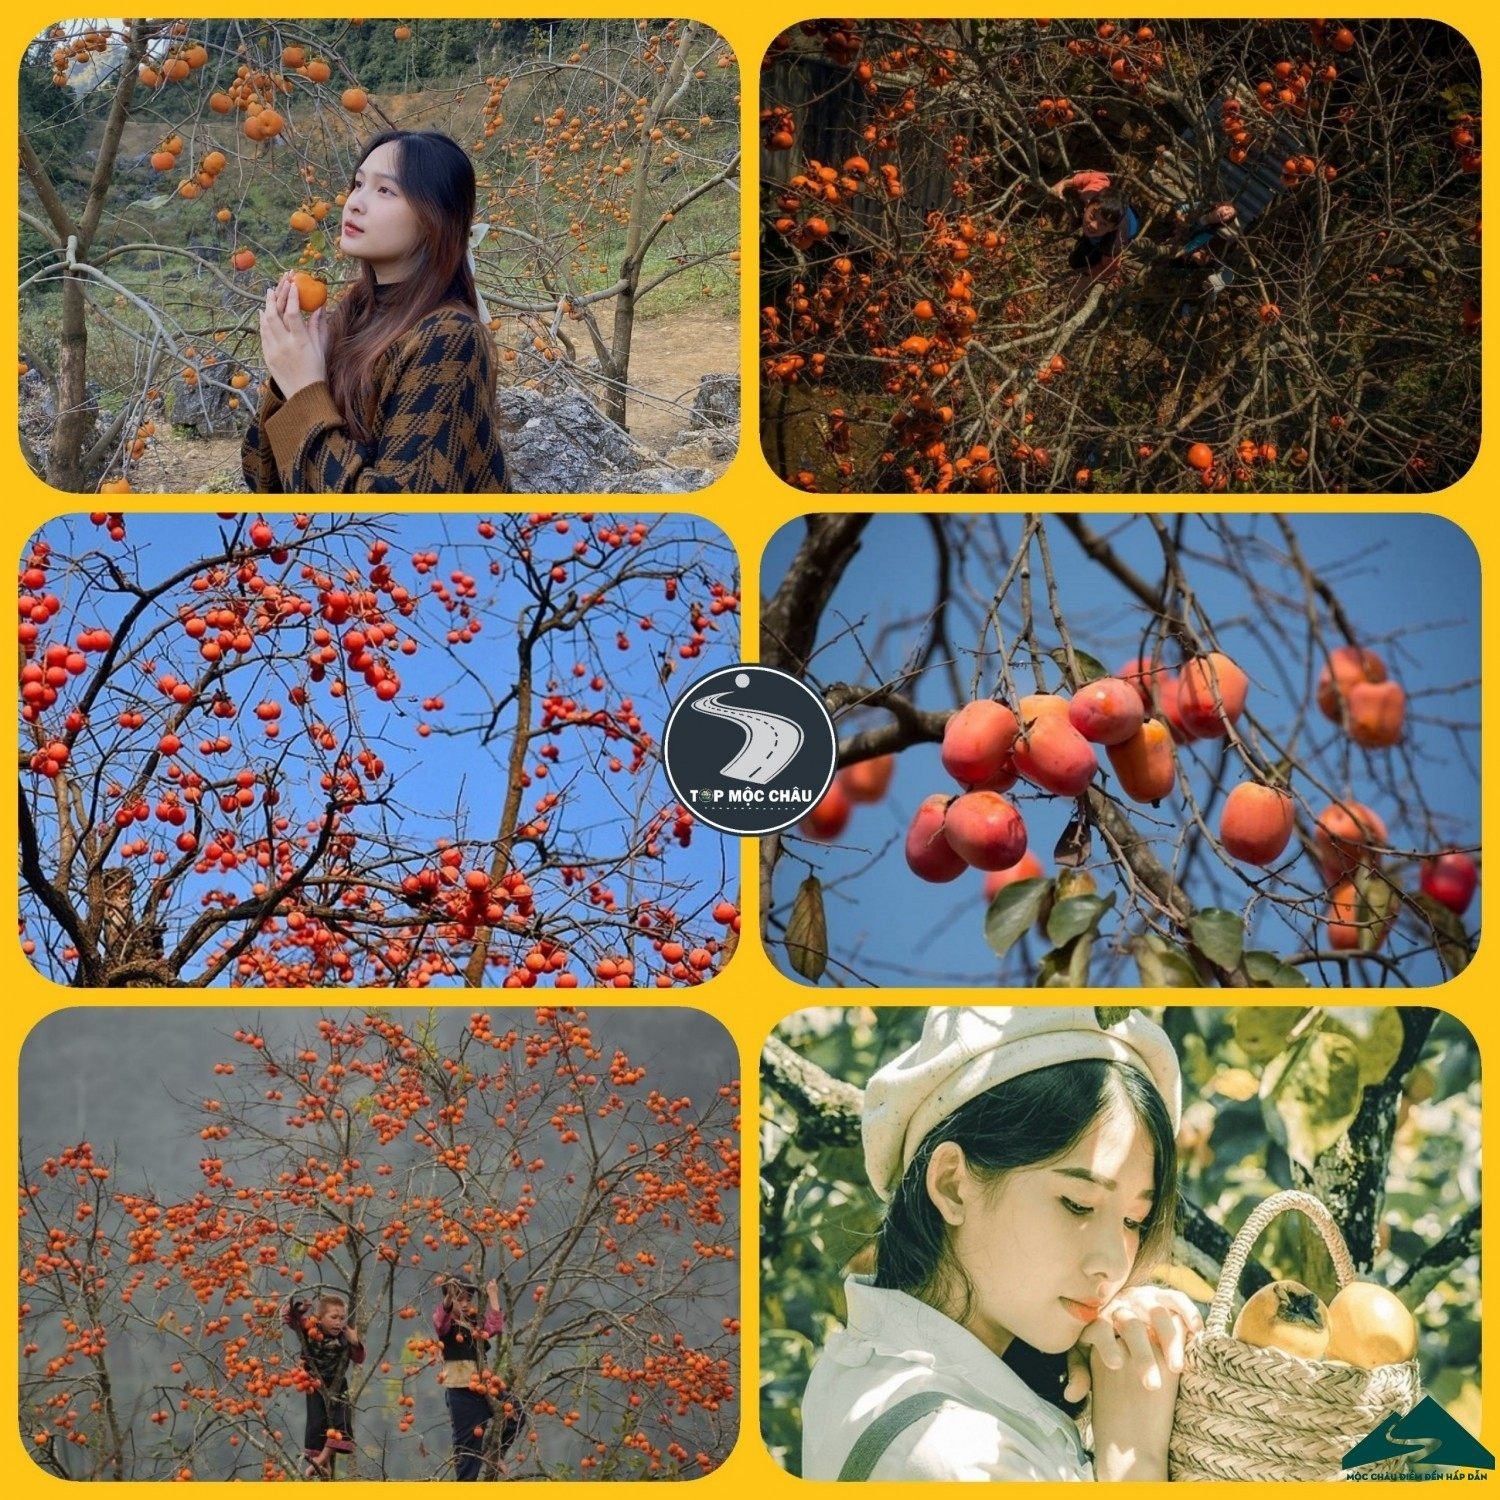 Du lịch Mộc Châu tháng 11: Độc đáo trải nghiệm mùa hồng thơ mộng